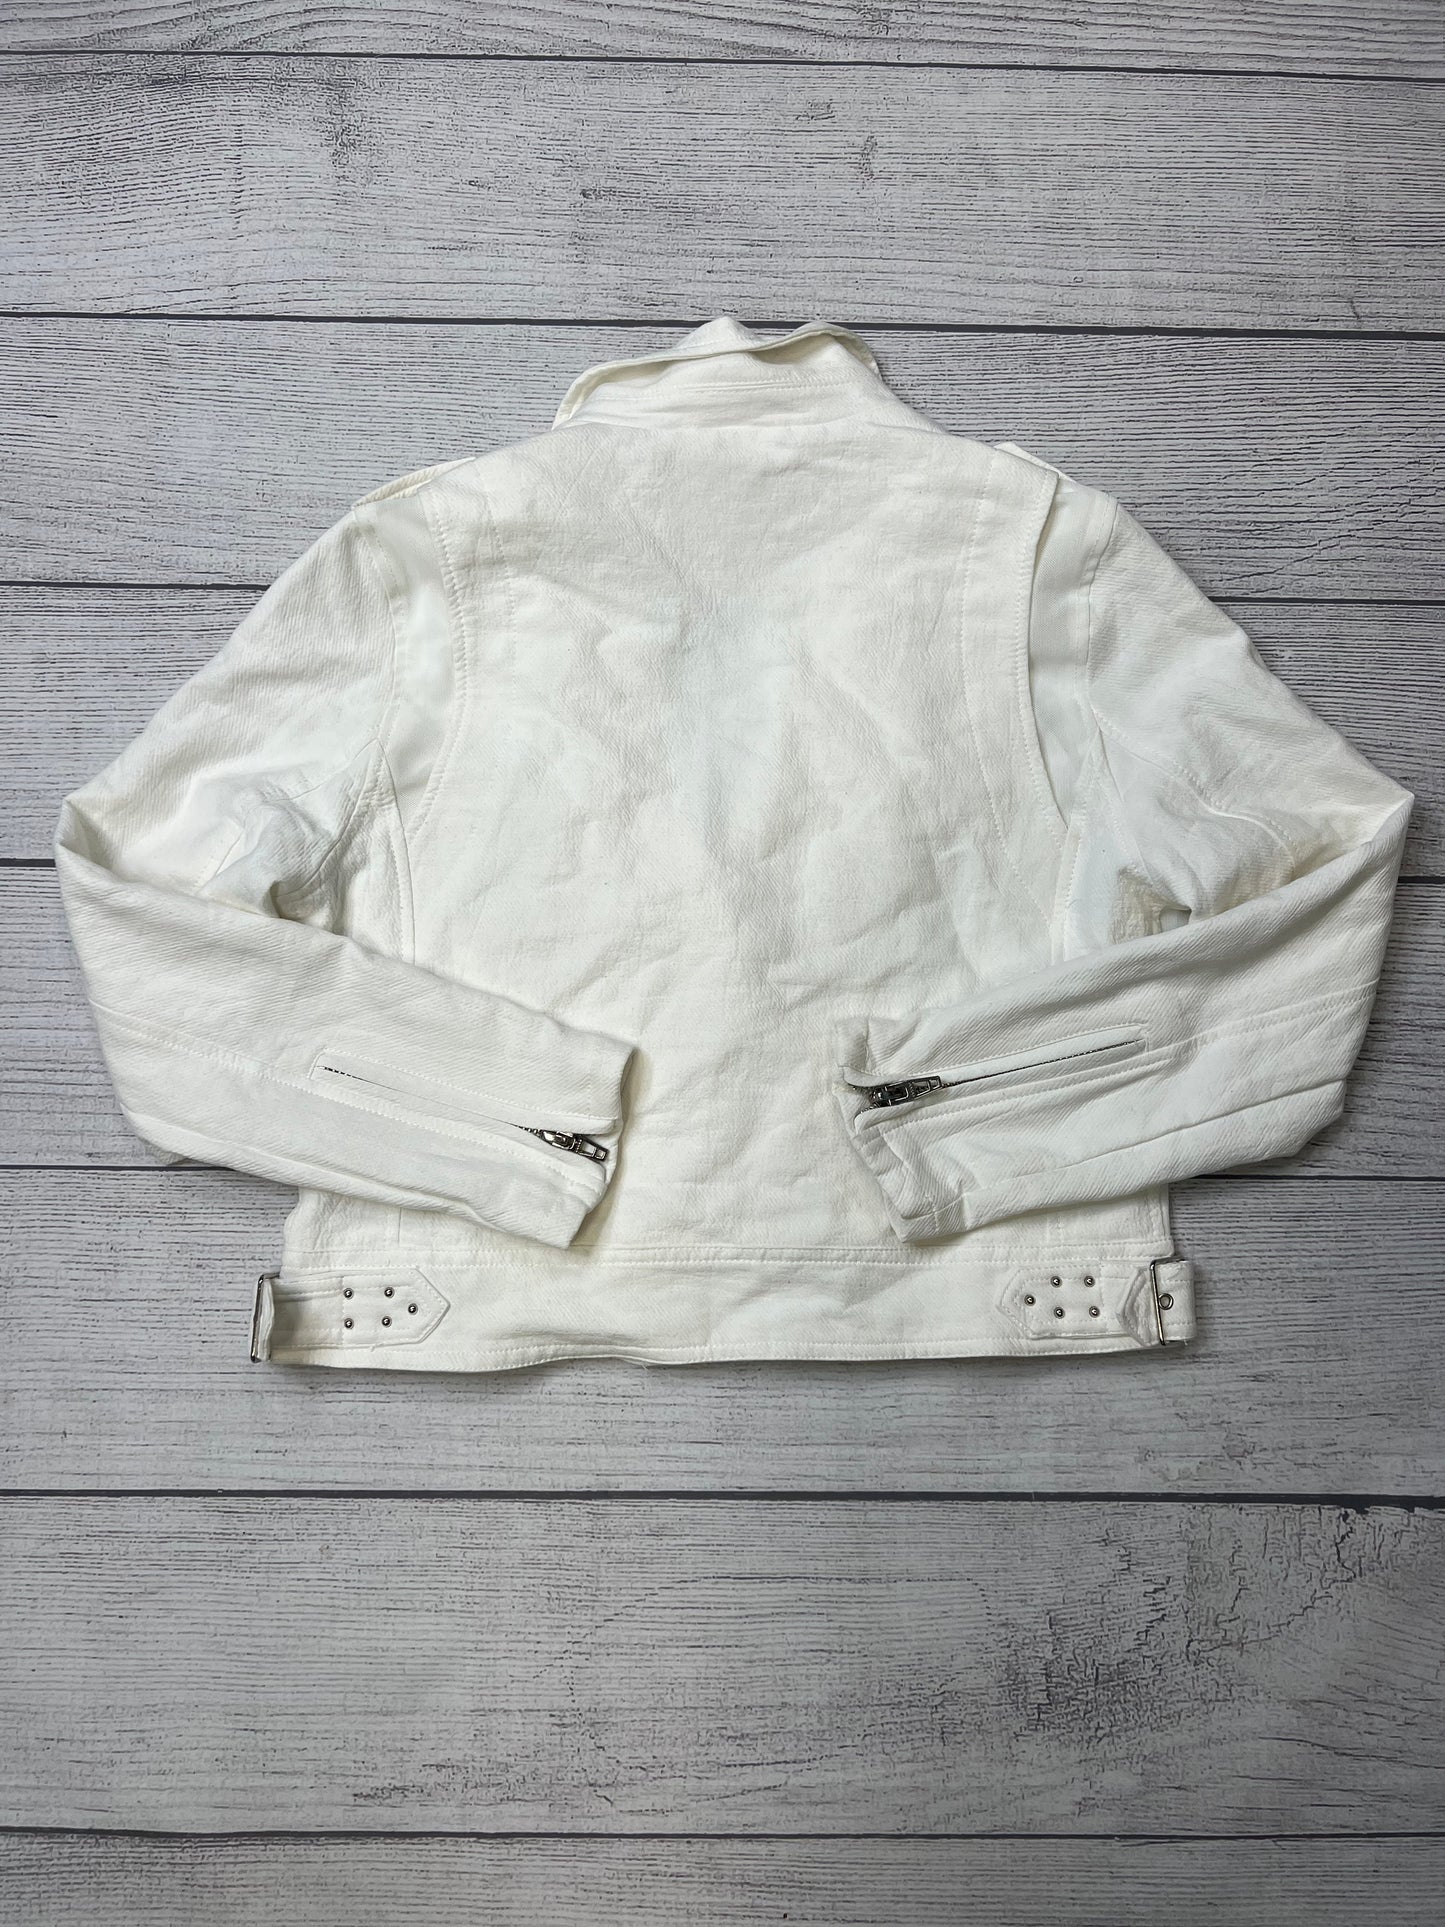 Jacket Moto By Blanknyc  Size: Xl